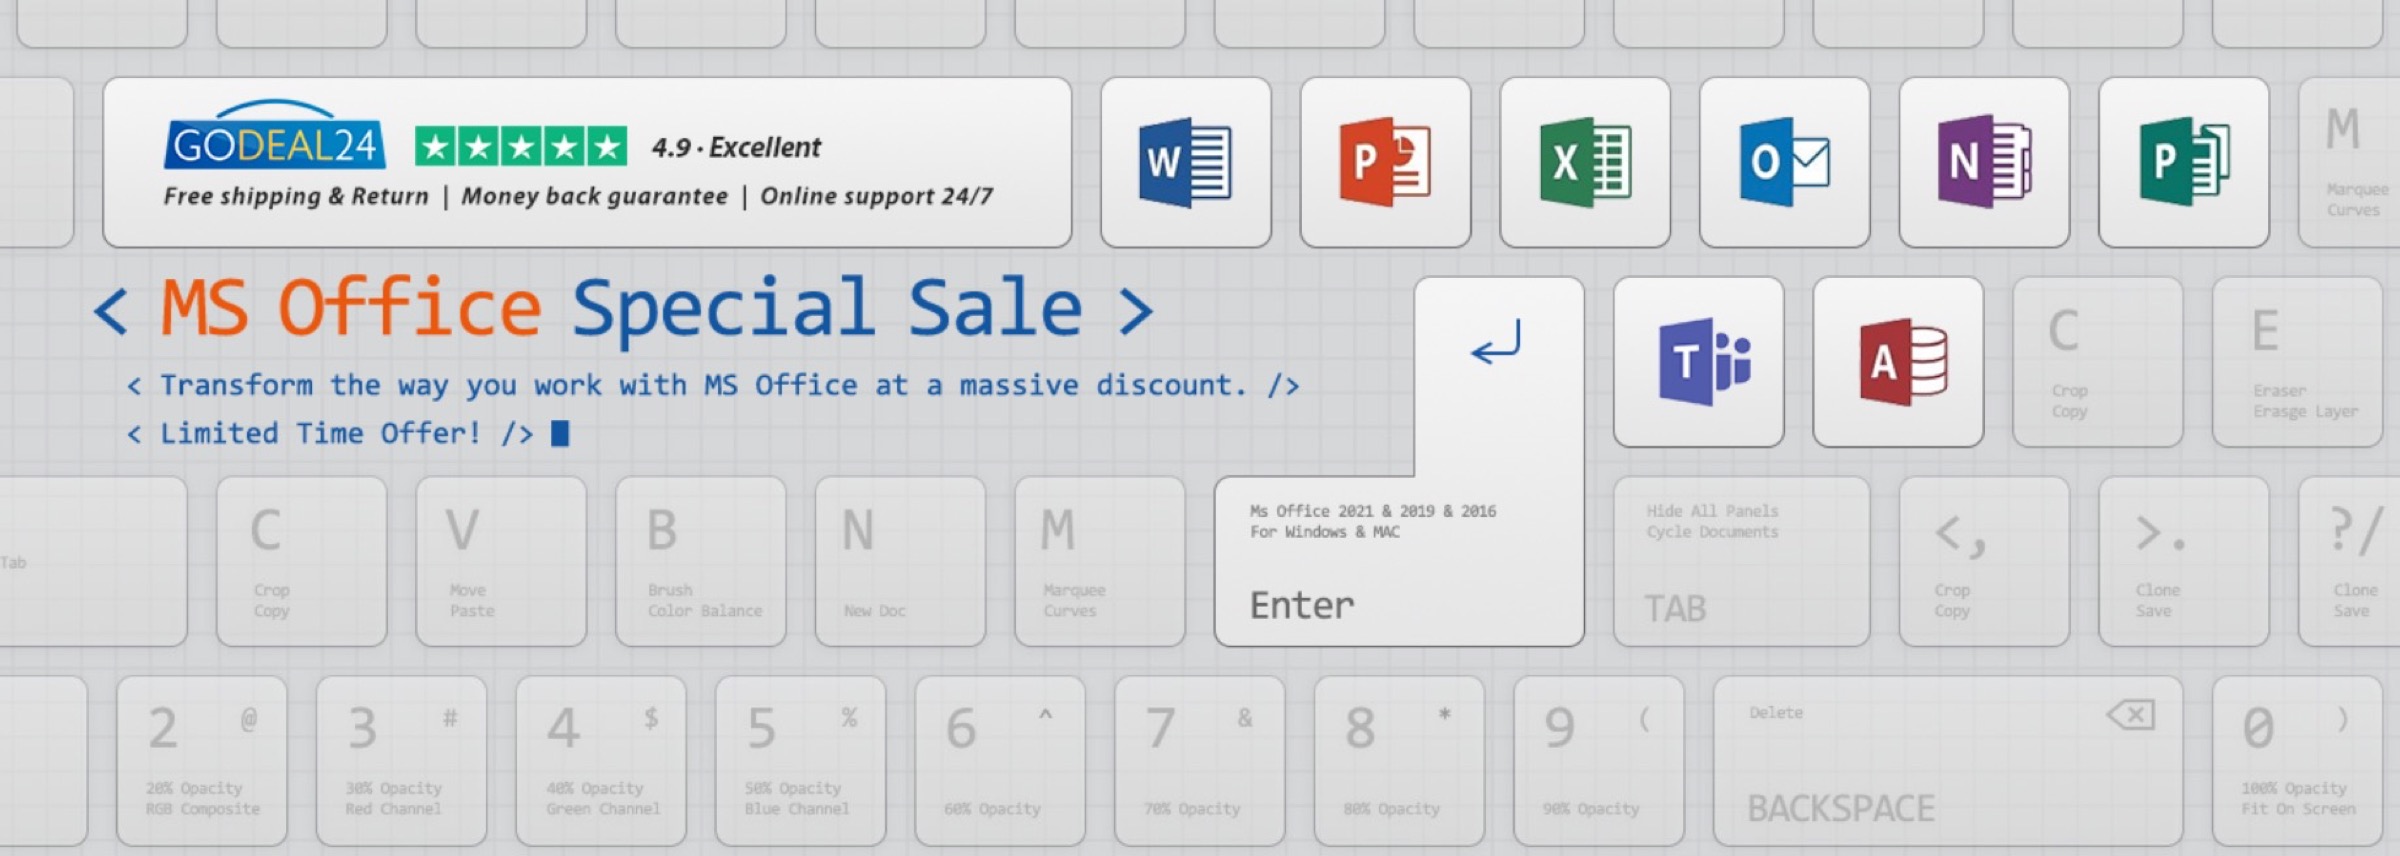 Produttività al top su Mac e PC con Microsoft Office a partire da 15 € su Godeal24